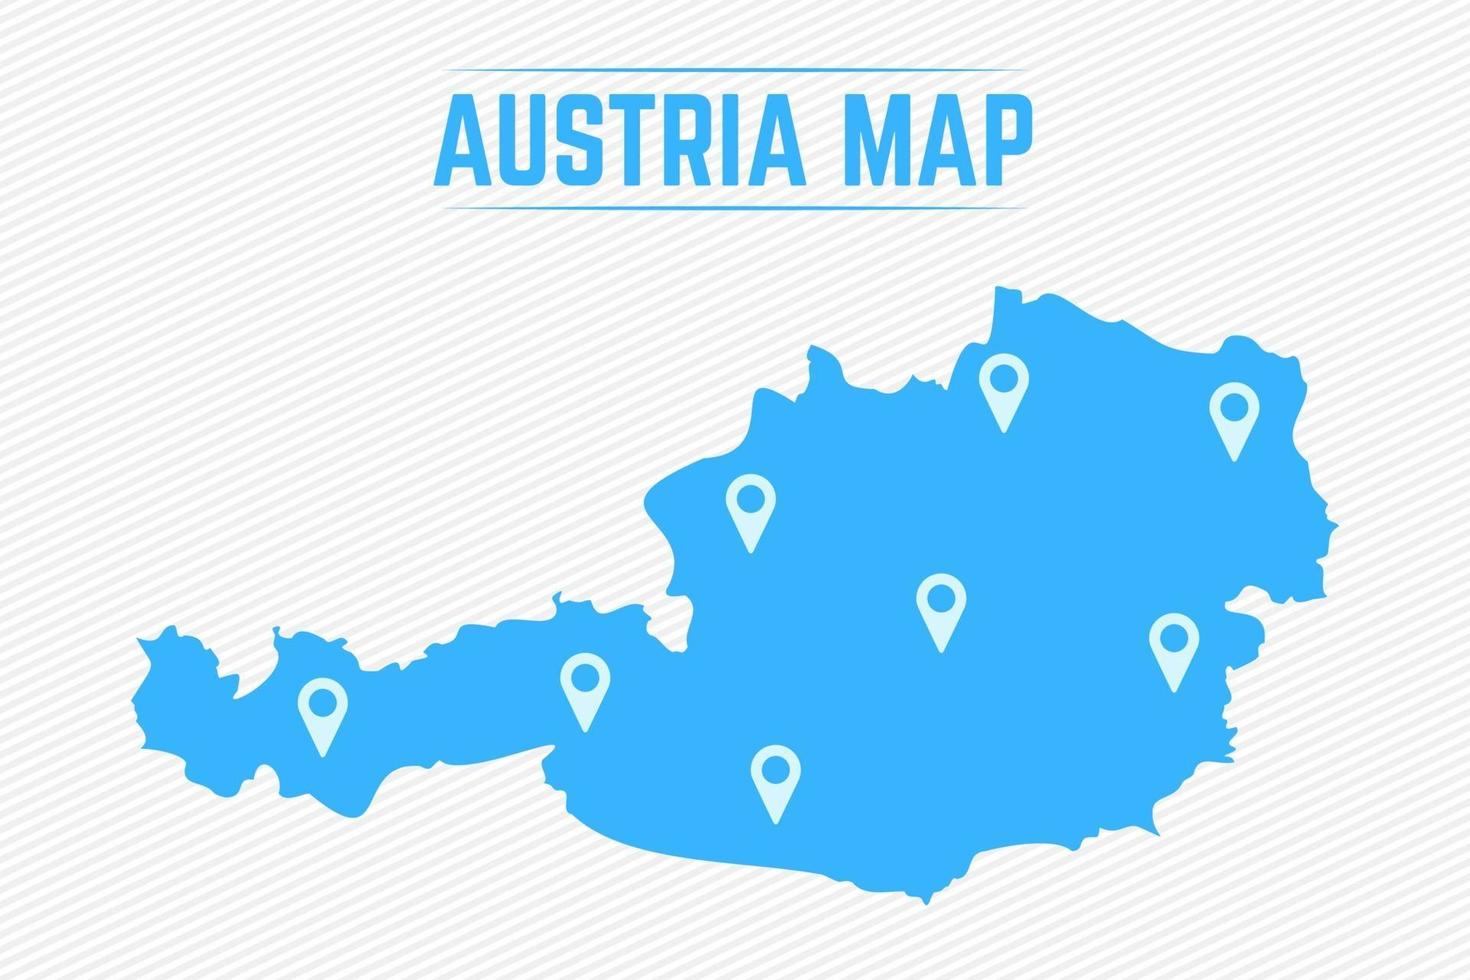 Austria mapa simple con iconos de mapa vector